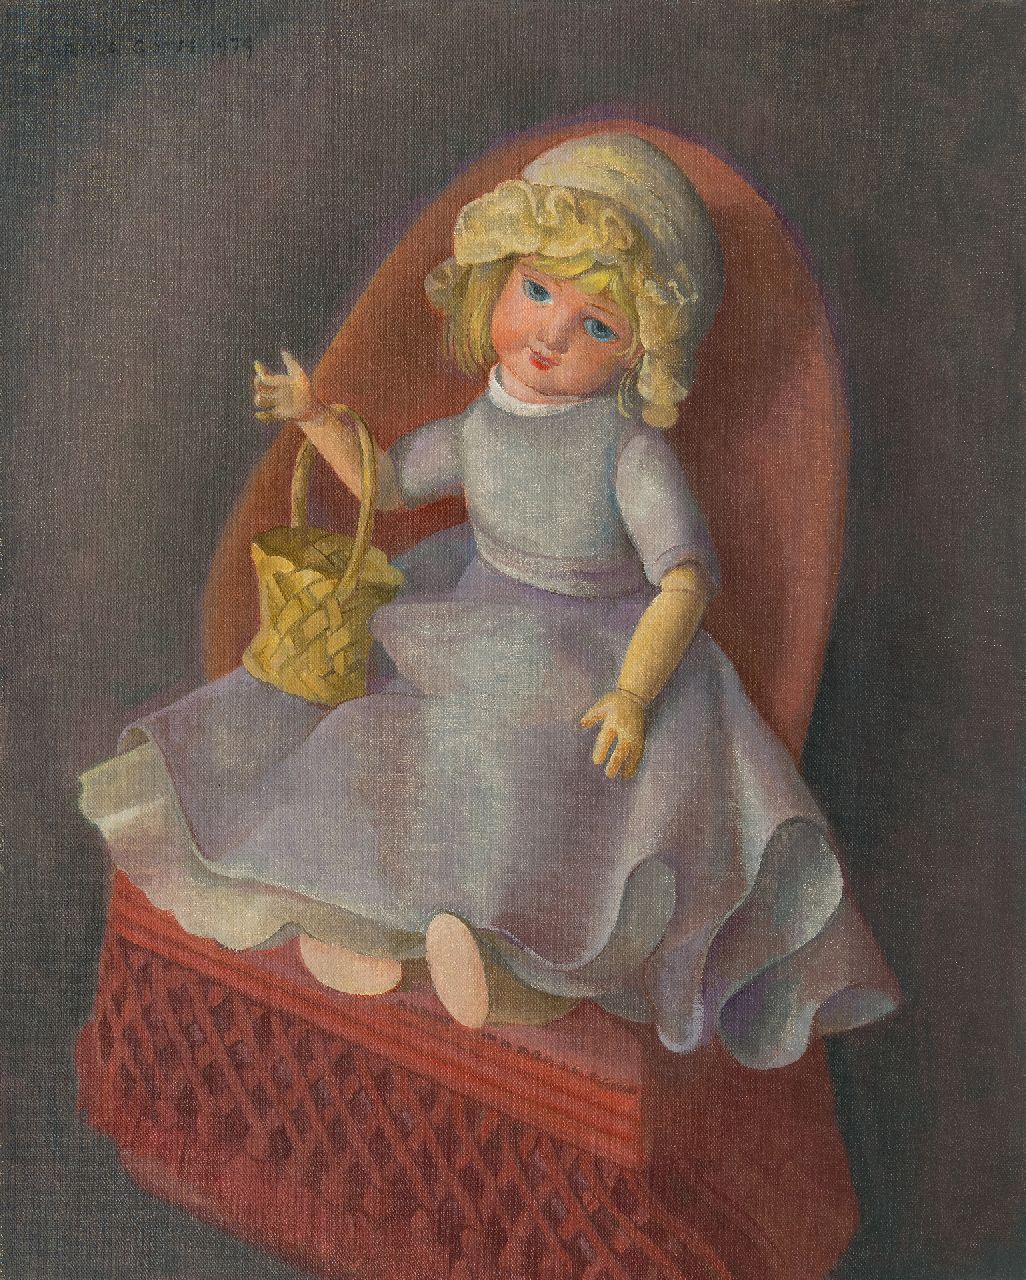 Góth C.  | Charlotte 'Sarika' Góth | Schilderijen te koop aangeboden | Pop op een stoel, olieverf op doek 58,2 x 47,2 cm, gesigneerd linksboven en gedateerd 1979